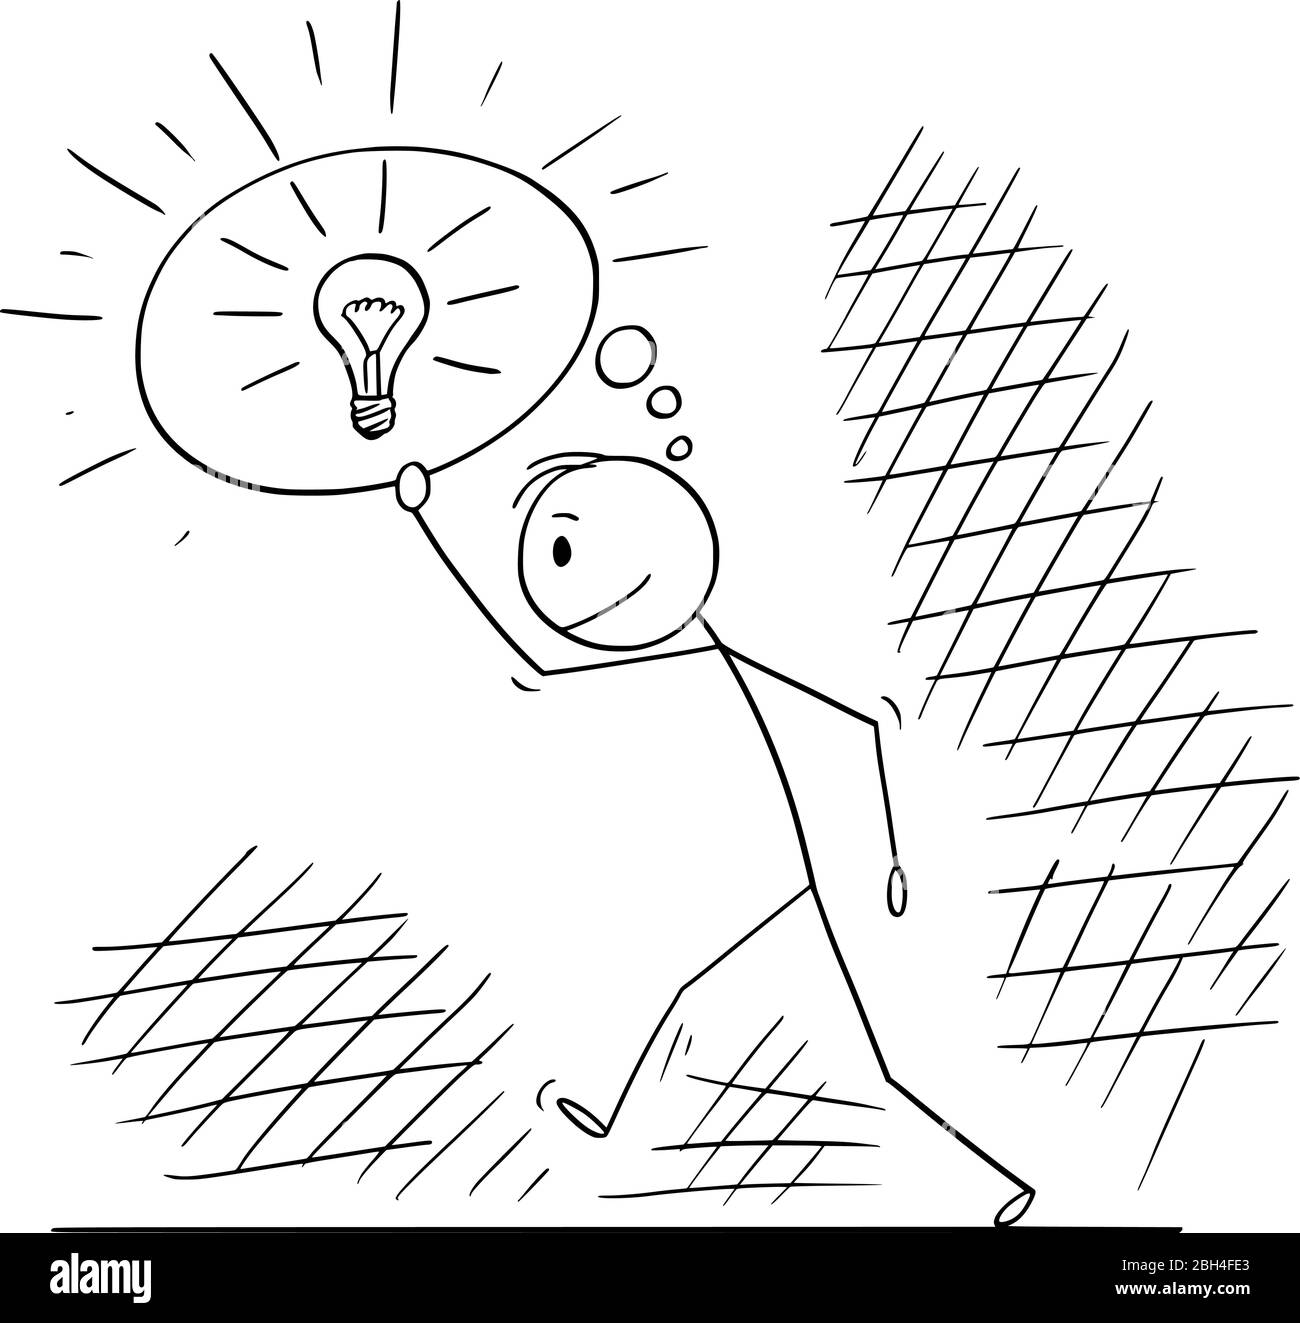 Vektor Cartoon Stick Figur Zeichnung konzeptionelle Illustration von Mann oder Geschäftsmann zu Fuß durch dunkle Zeiten und Blitz durch seine Innovationen und Ideen. Geschäftskonzept. Stock Vektor